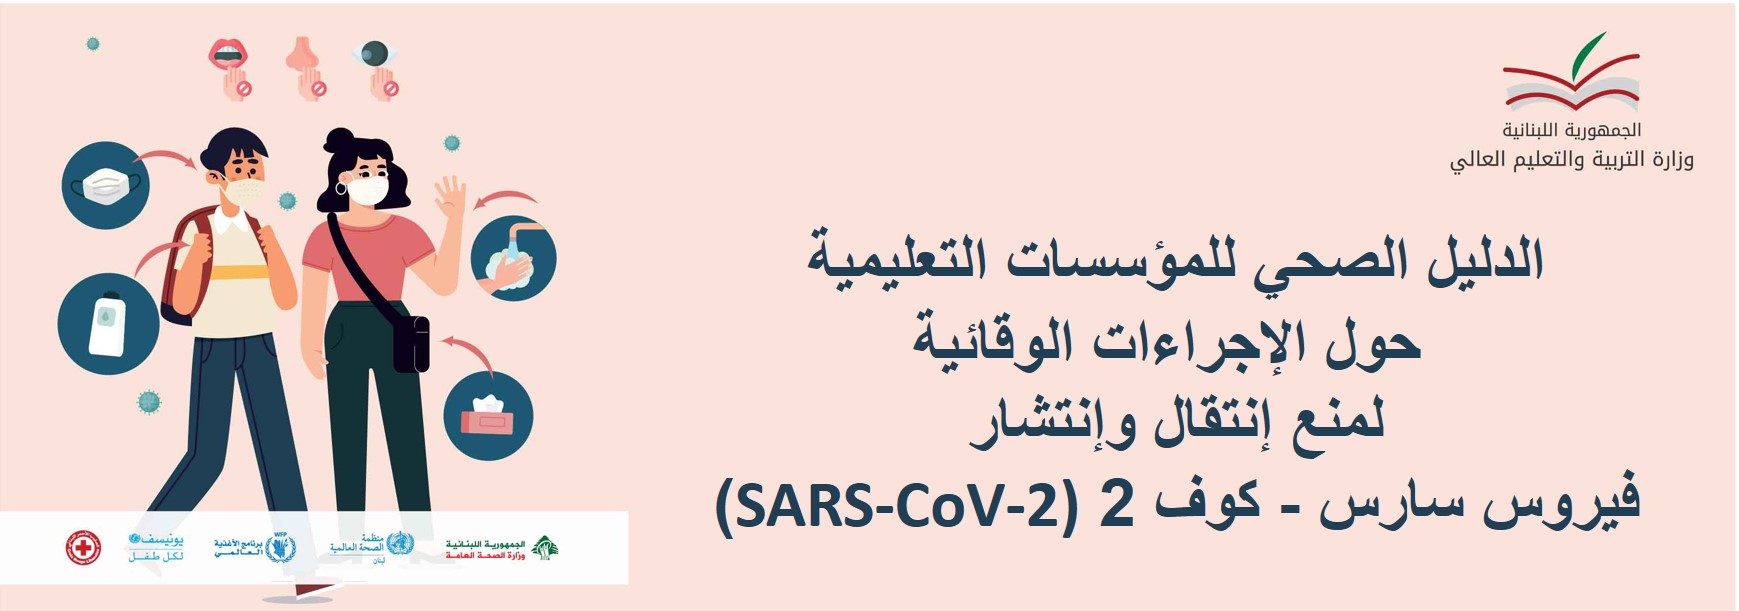 الدليل الصحي للمؤسسات التعليمية حول الإجراءات الوقائية لمنع إنتقال وإنتشار فيروس سارس – كوف 2 (SARS-CoV-2)